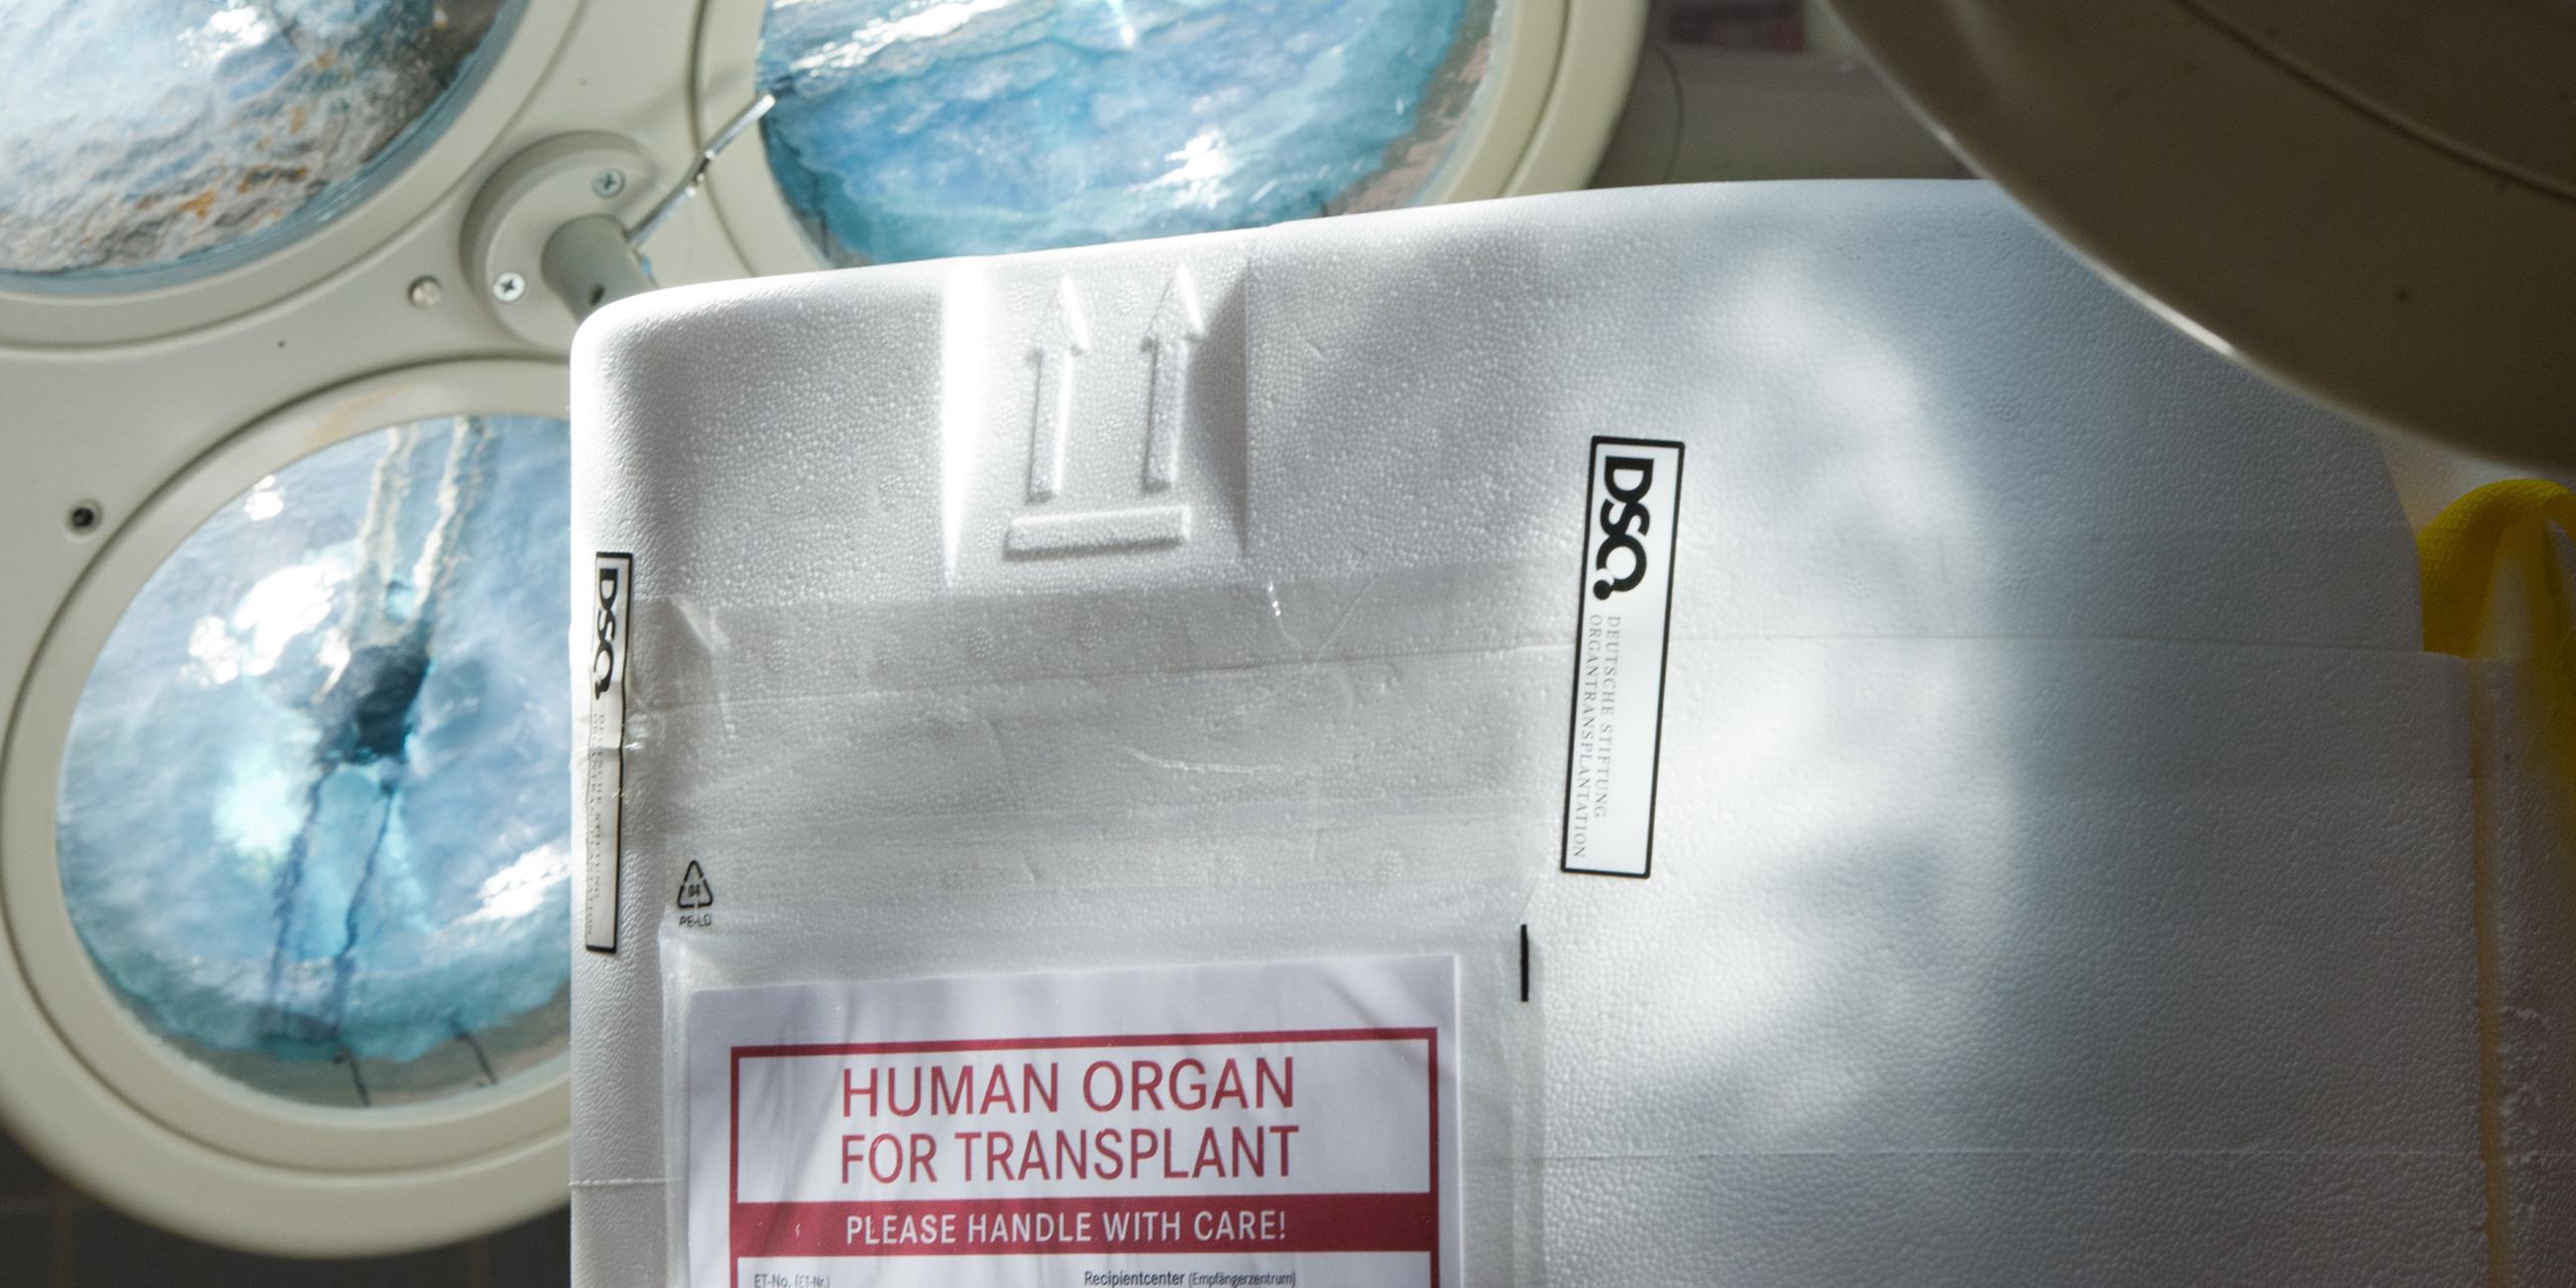 Archiv: Ein Styropor-Behälter zum Transport von zur Transplantation vorgesehenen Organen steht am 27.09.2012 in Berlin im Operationssaal eines Krankenhauses auf einem Tisch